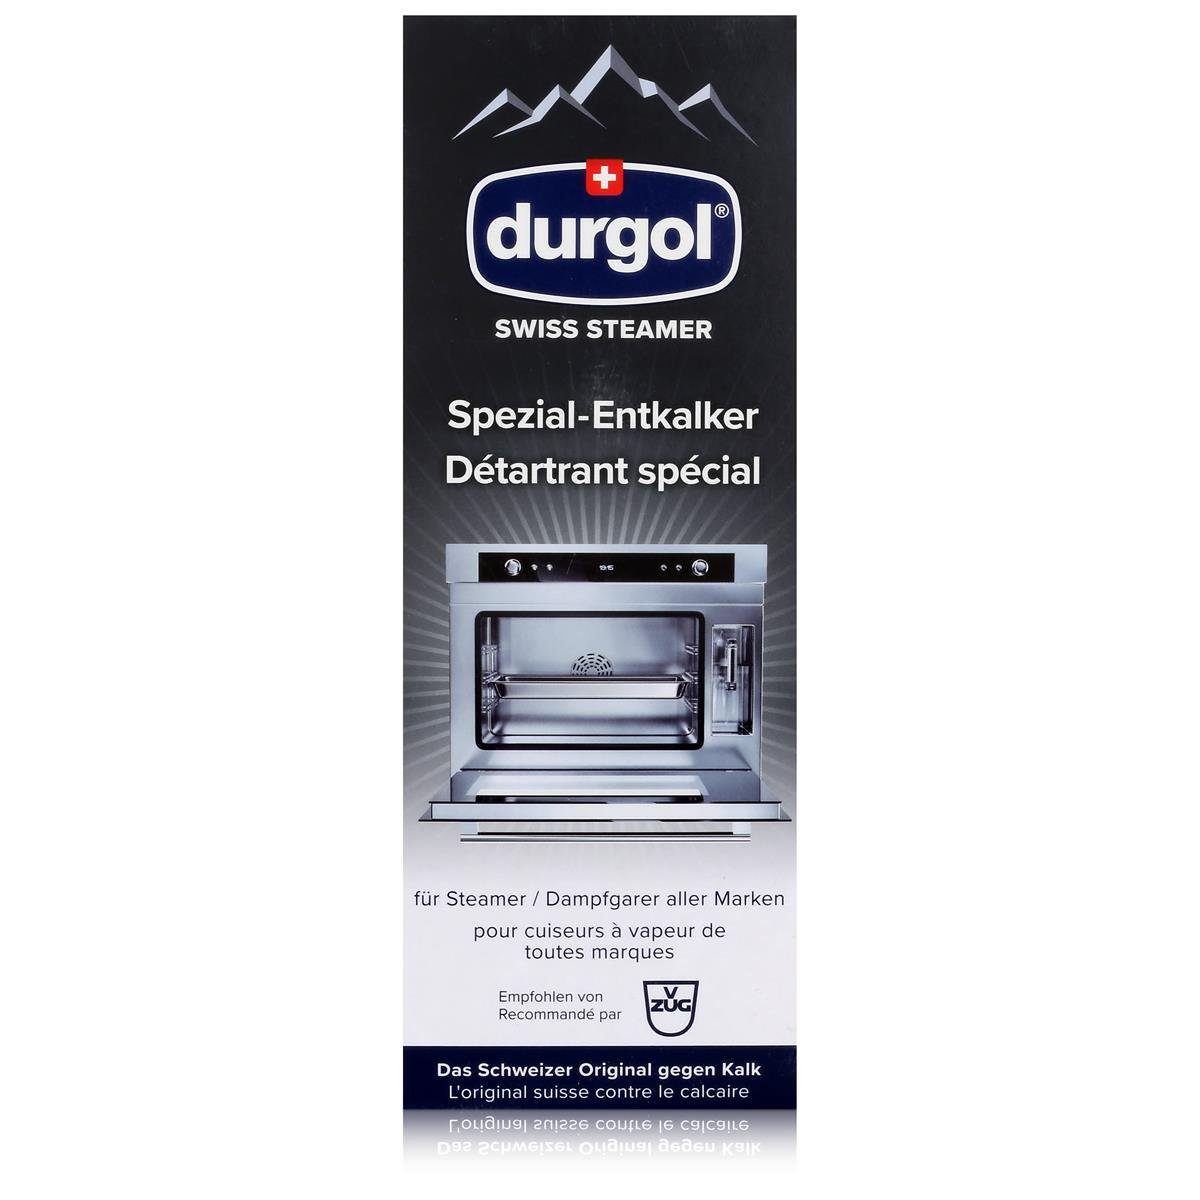 Steamer - Spezialwaschmittel (5er Dampfgarer Pac 500ml Für Durgol Spezial-Entkalker Durgol Swiss